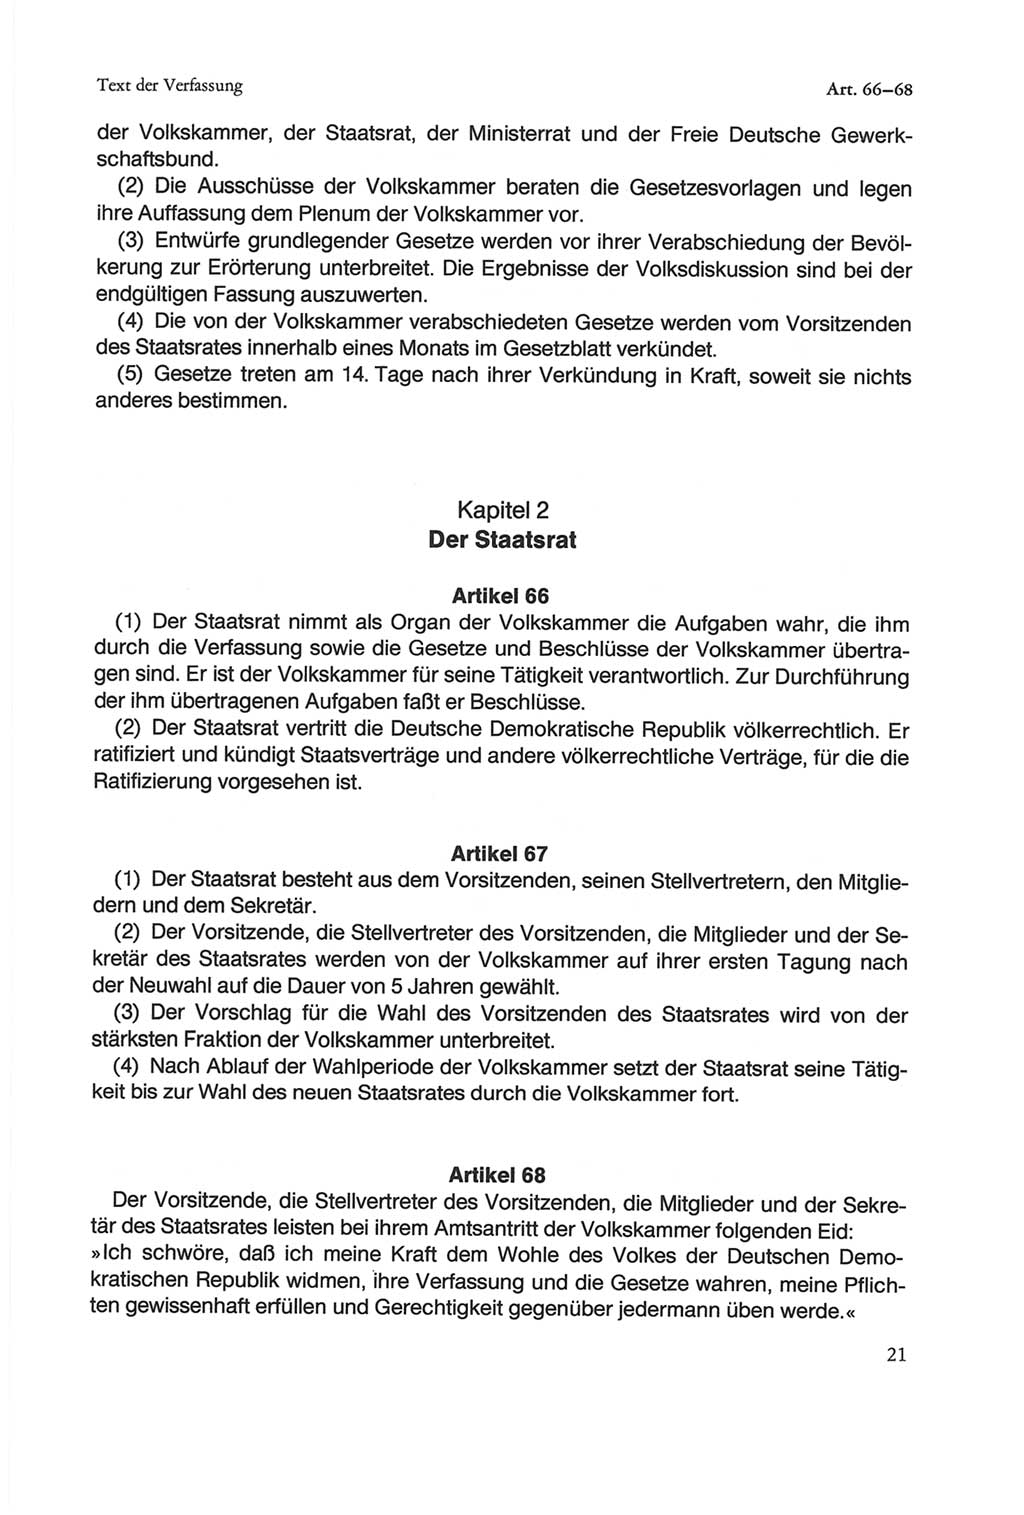 Die sozialistische Verfassung der Deutschen Demokratischen Republik (DDR), Kommentar mit einem Nachtrag 1997, Seite 21 (Soz. Verf. DDR Komm. Nachtr. 1997, S. 21)